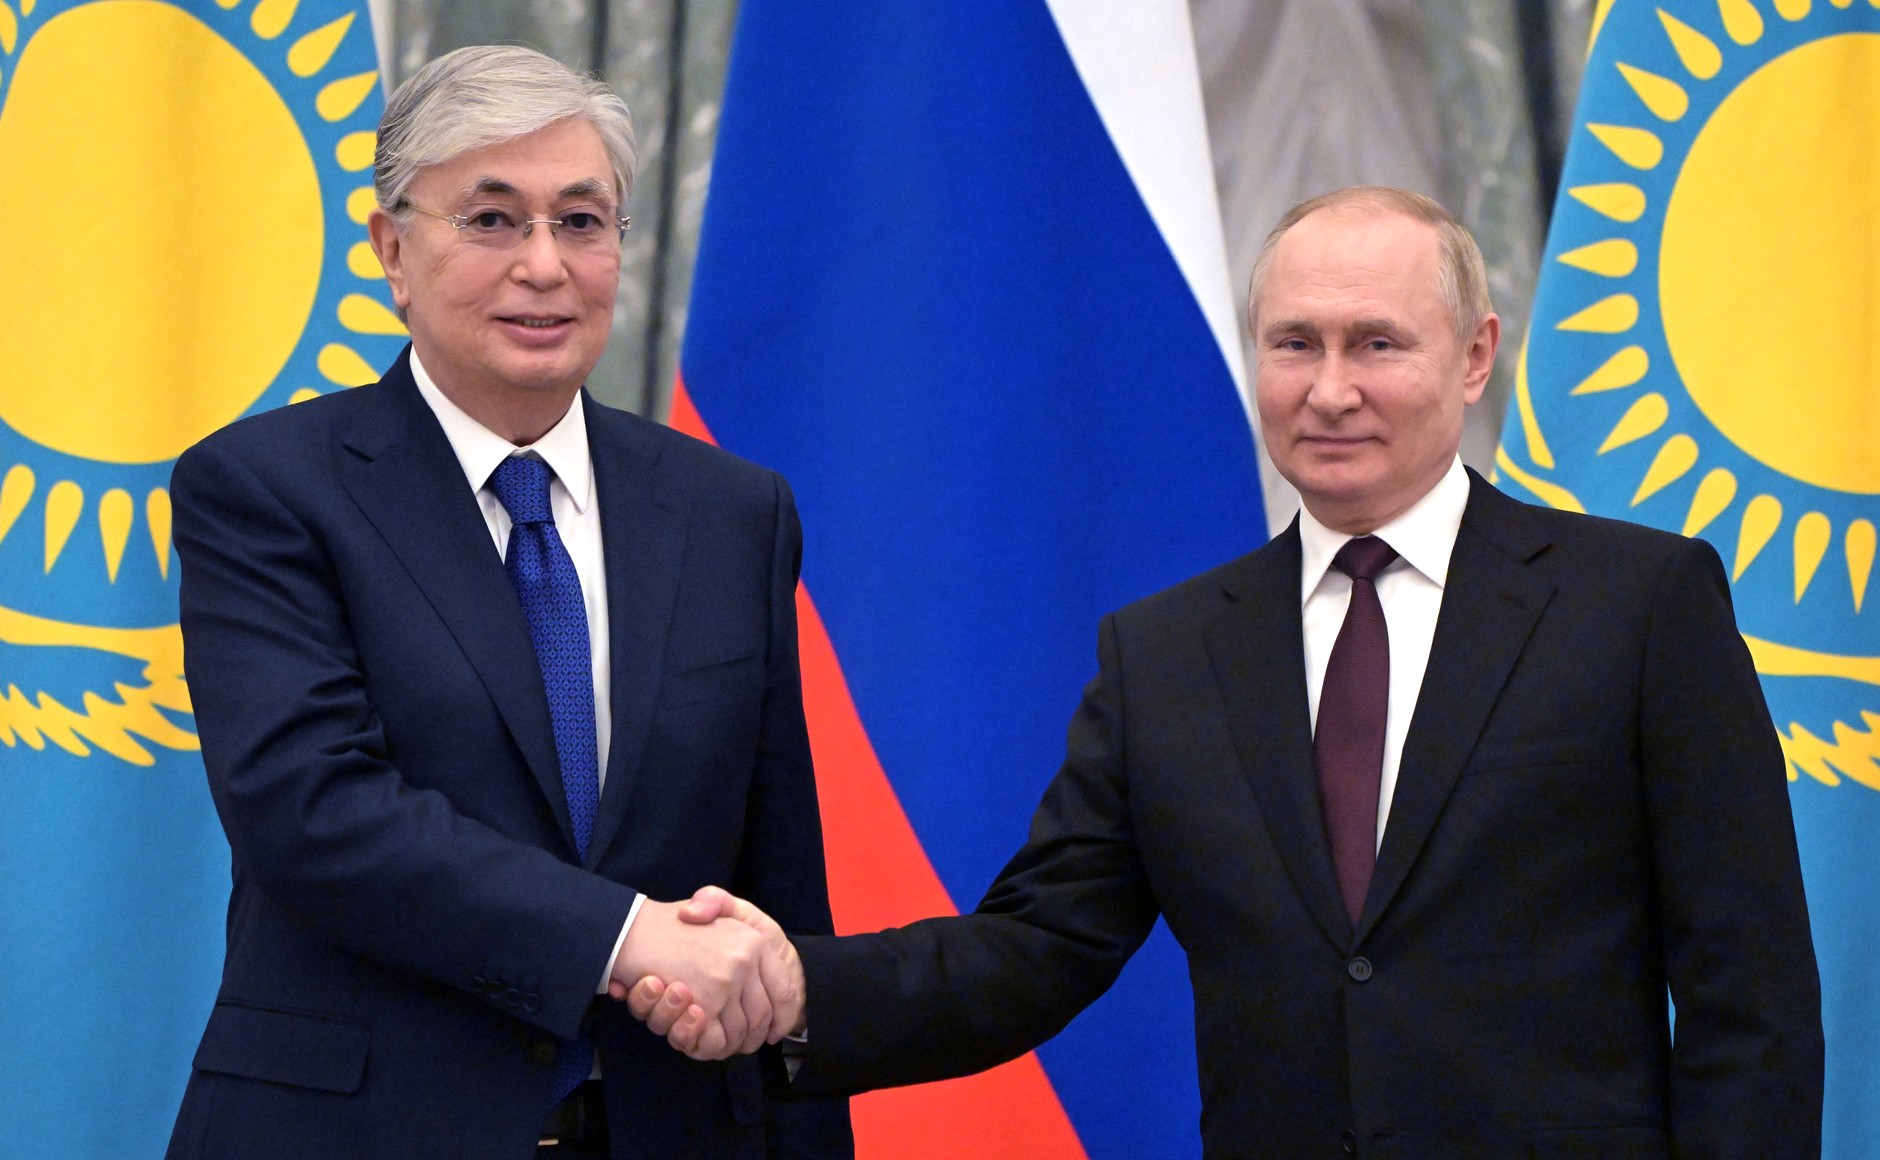 خارجہ پالیسی میں روس کے ساتھ تعلقات پر توجہ دیں گے، قازقستان